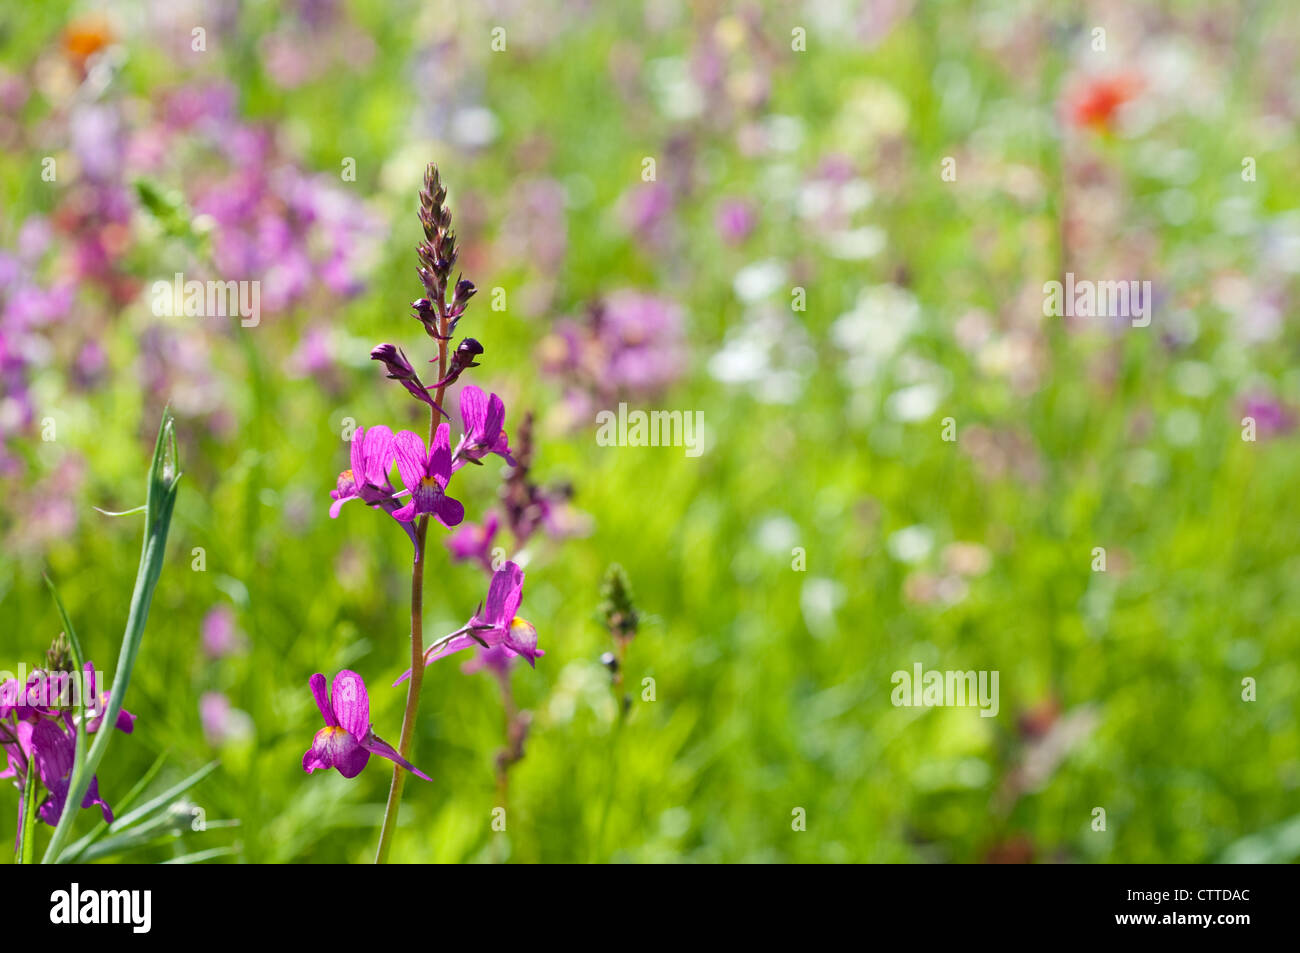 Single purple wildflower in a field of summer wild flowers, England, UK Stock Photo